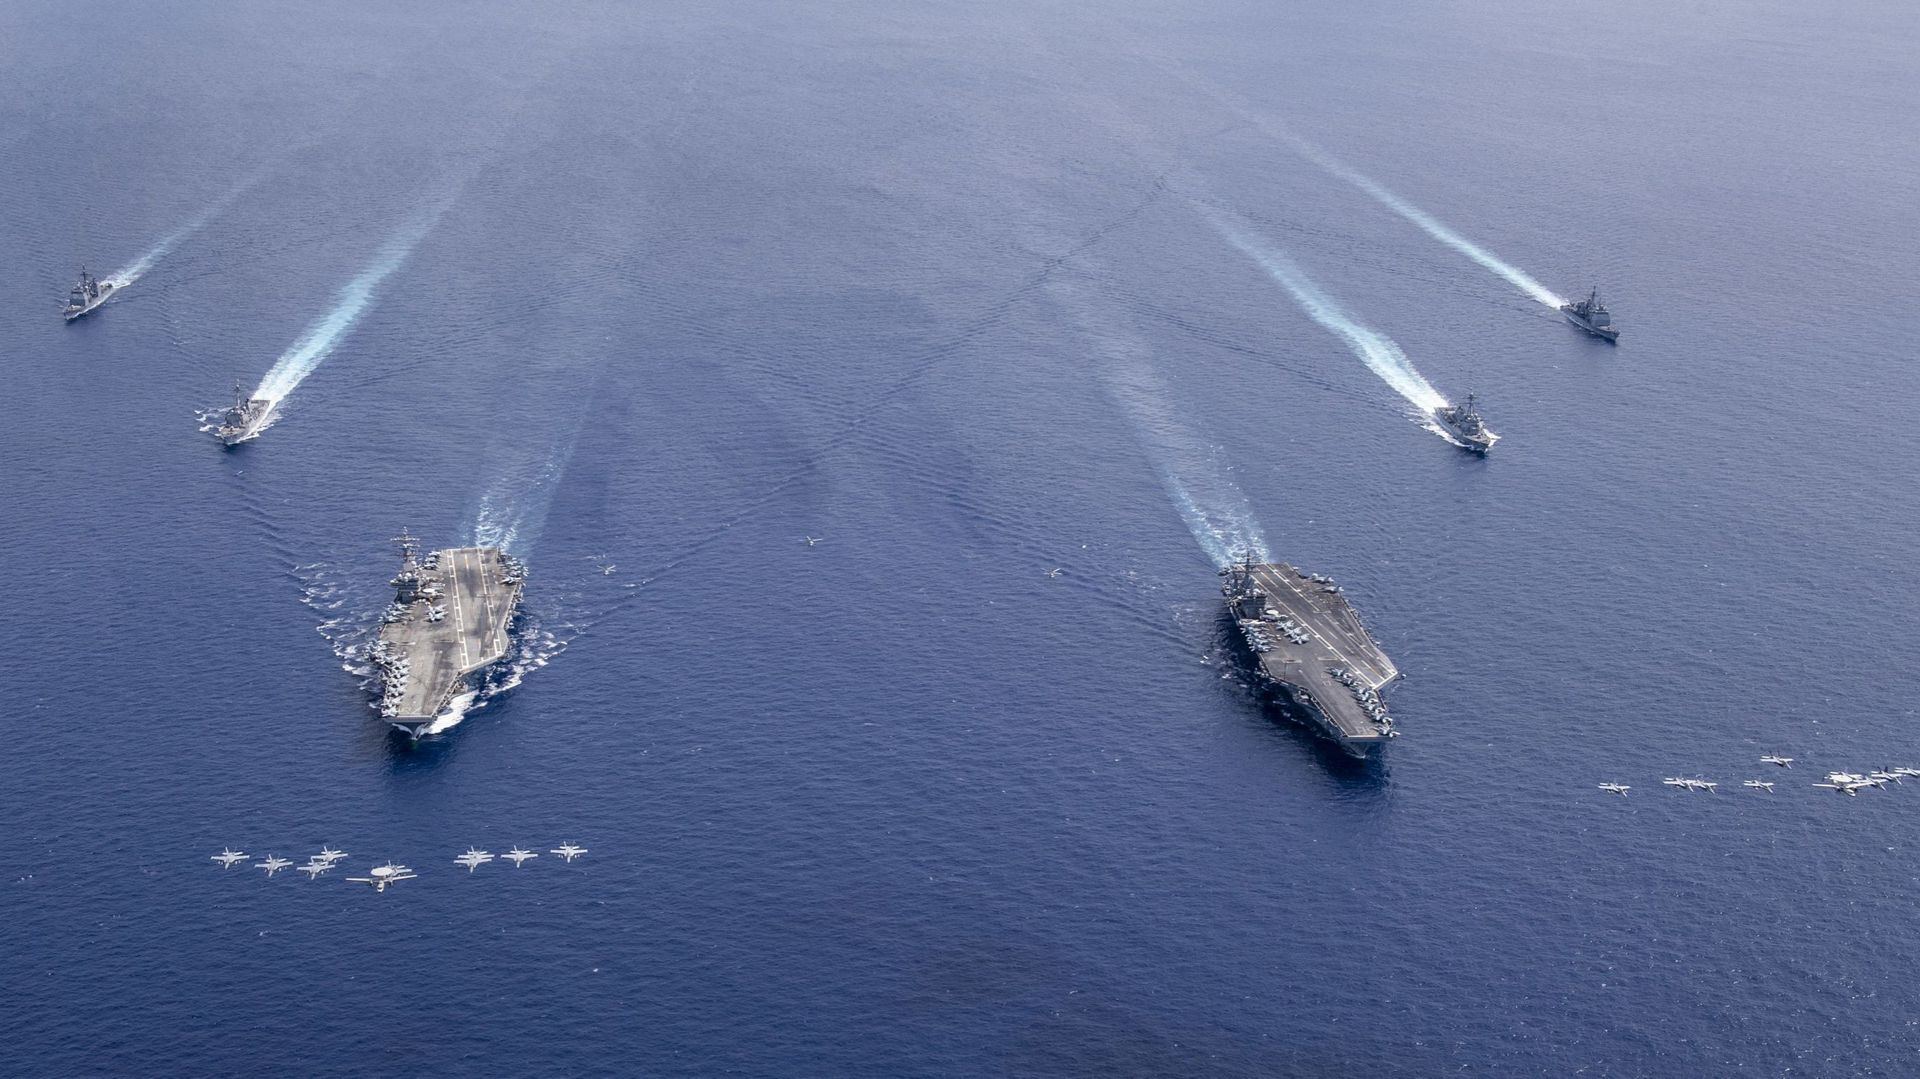 Démonstration de force américaine en 2020 : des groupes d’attaque mènent des opérations avec deux porte-avions dans la région Indo-Pacifique.